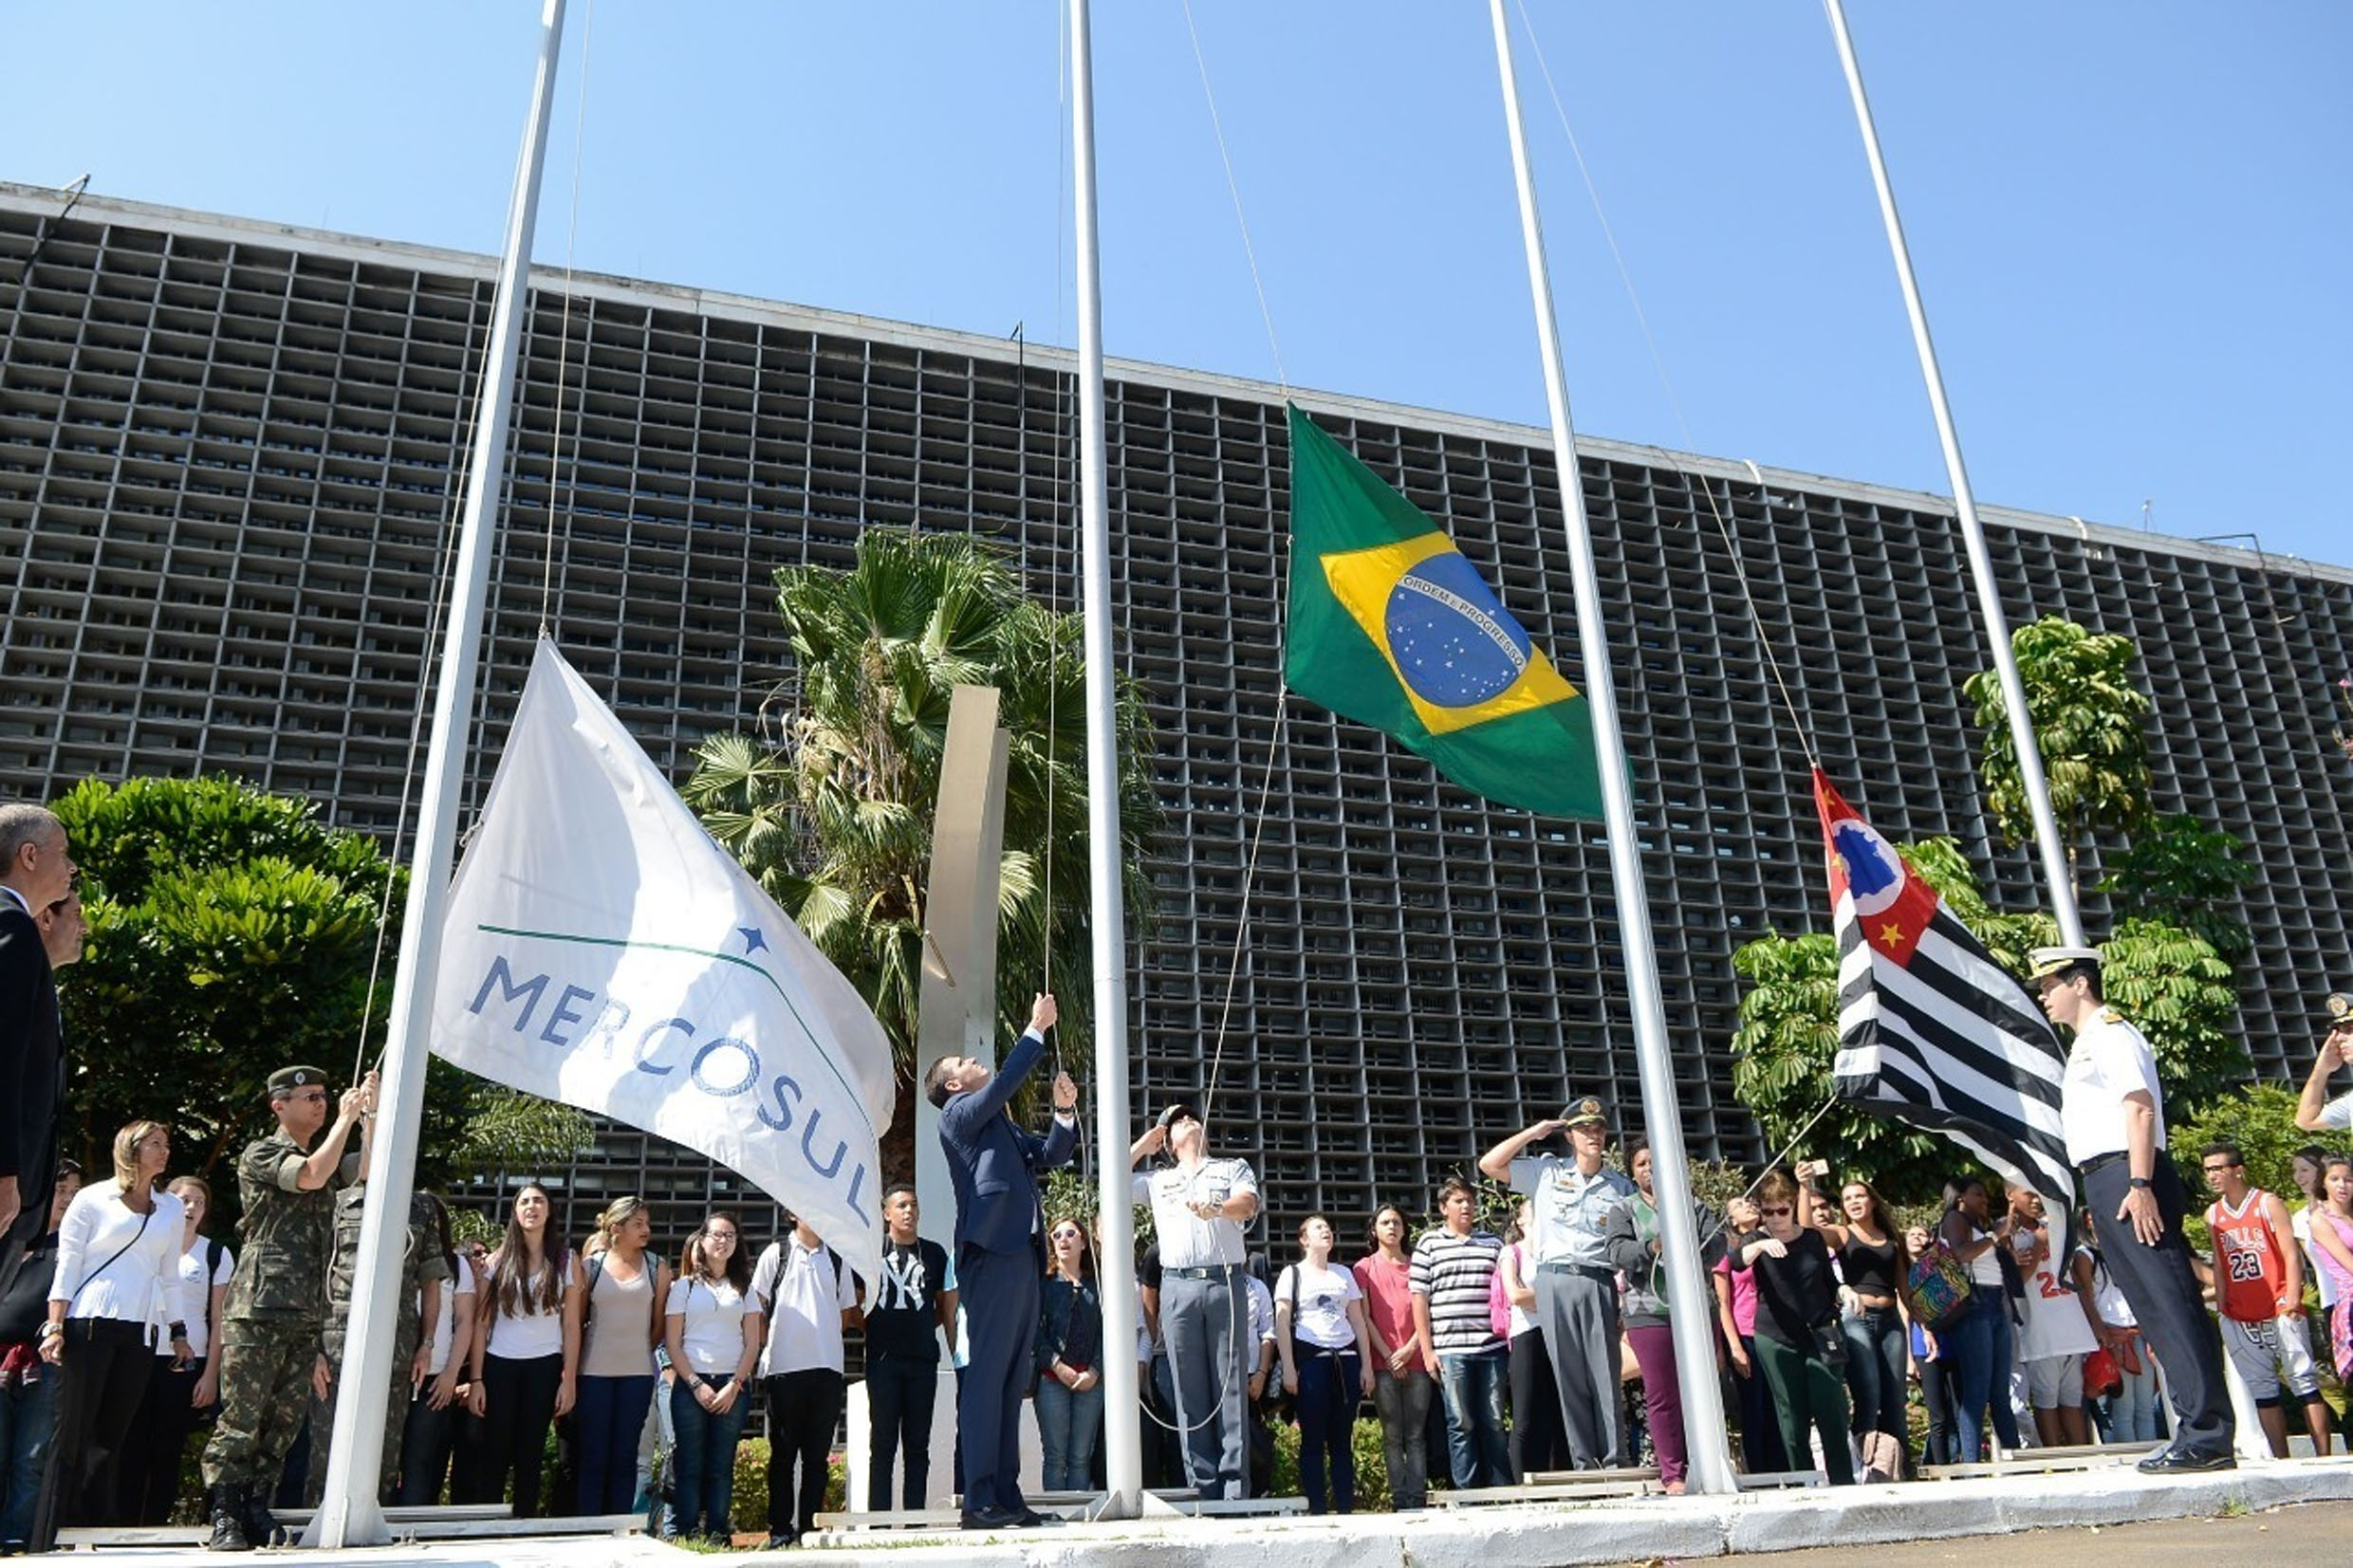 Bandeira de Mesa Império do Brasil